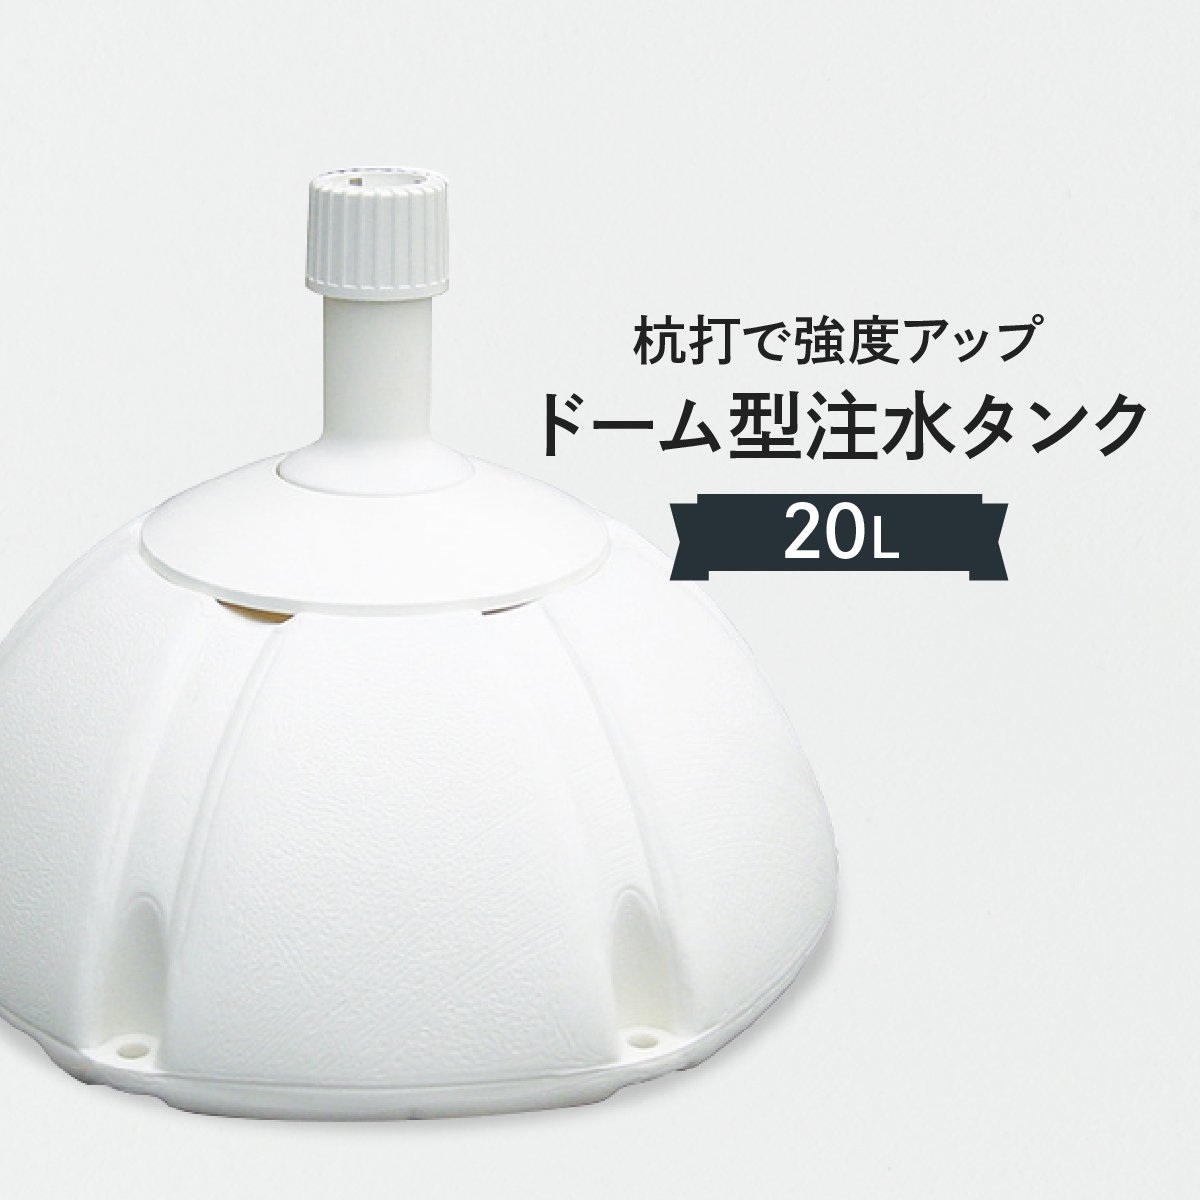 のぼりポール用 注水タンク20L おしゃれなドーム型